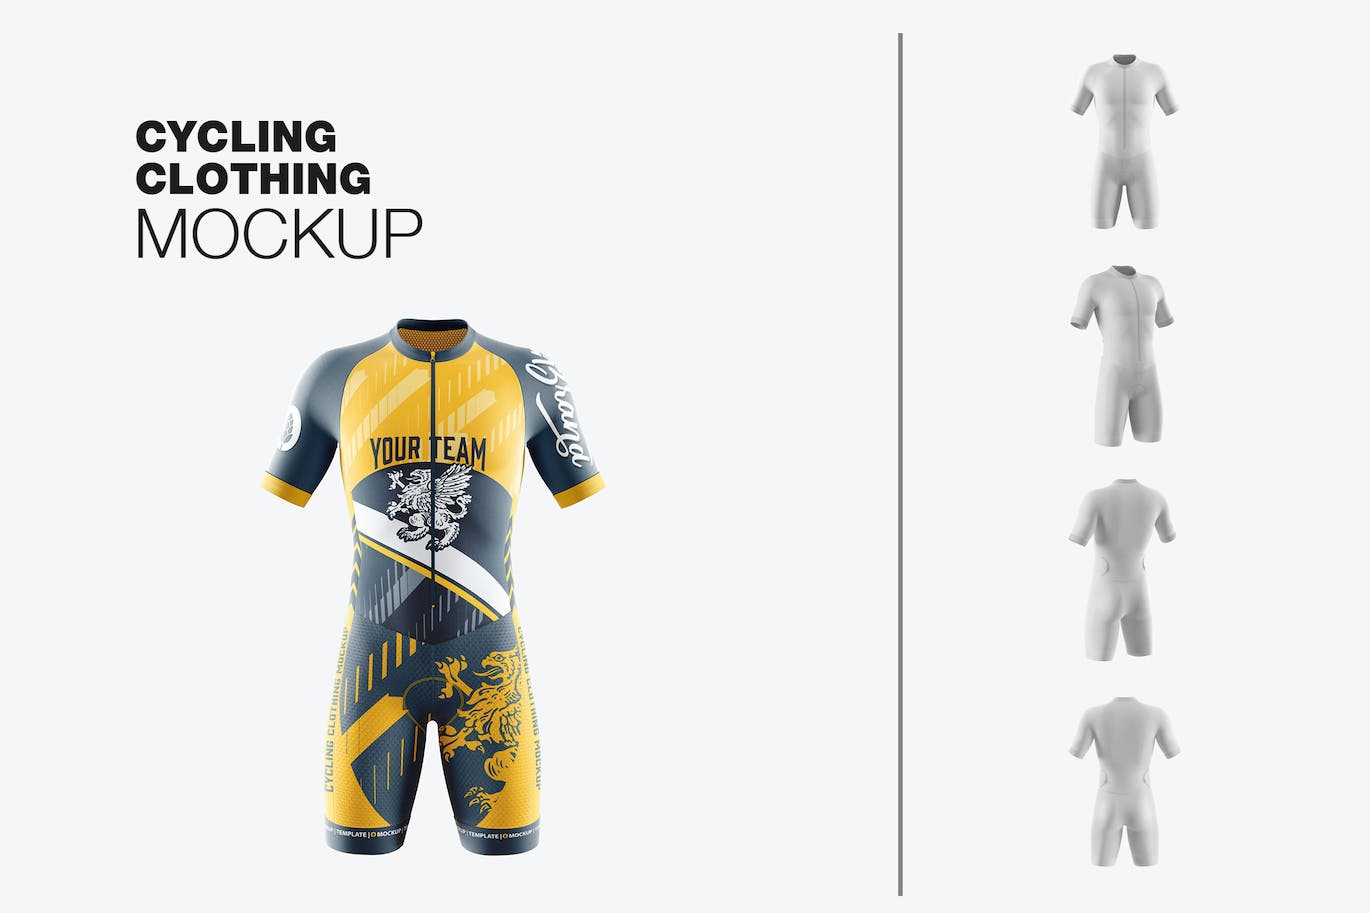 男子运动套装自行车服装品牌设计样机 Sport Cycling Suit for Men Mockup 样机素材 第1张